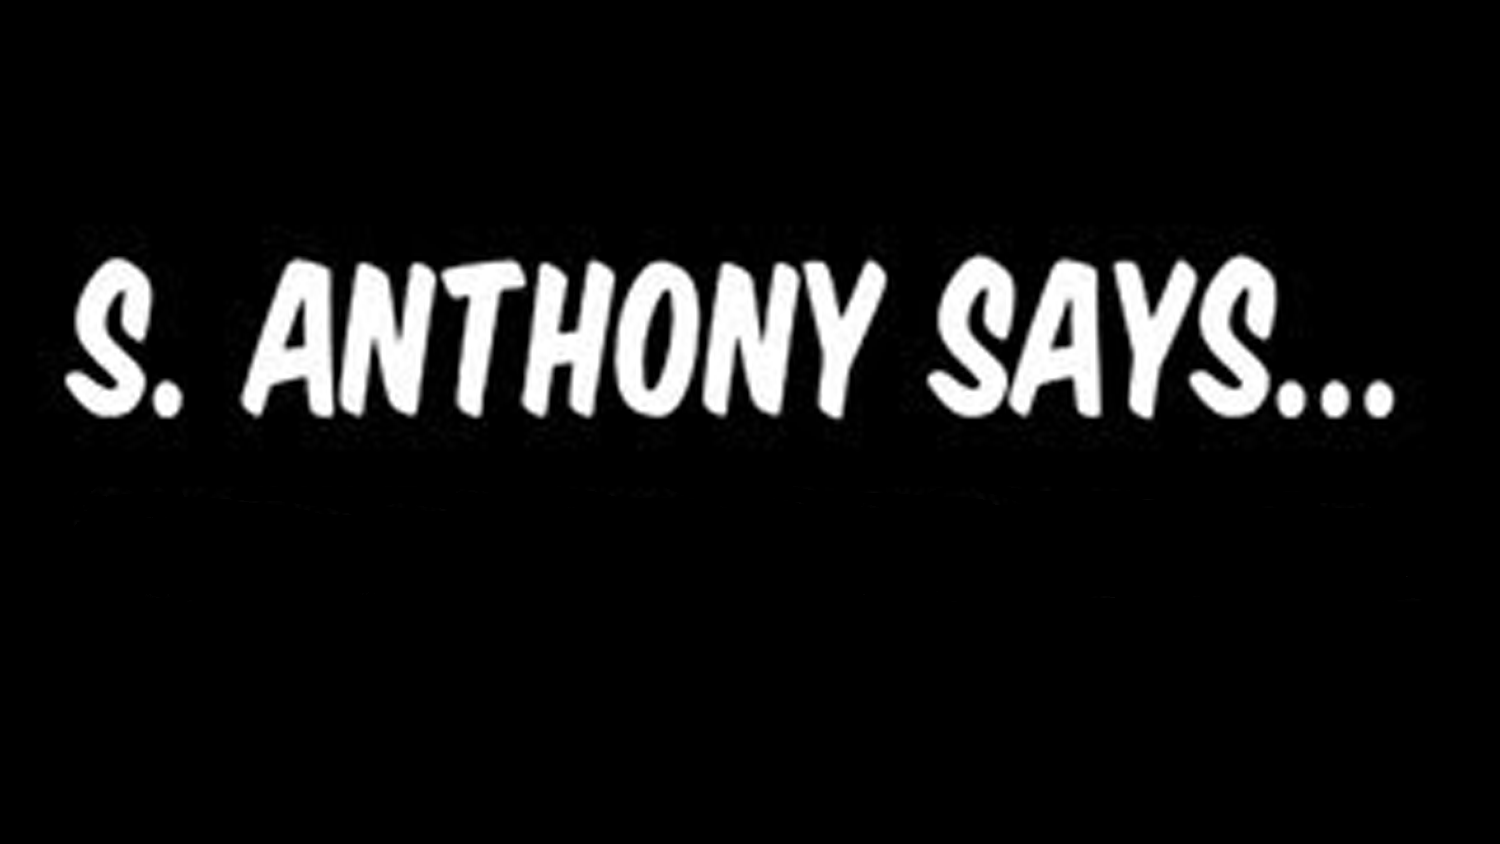 S. Anthony Says…